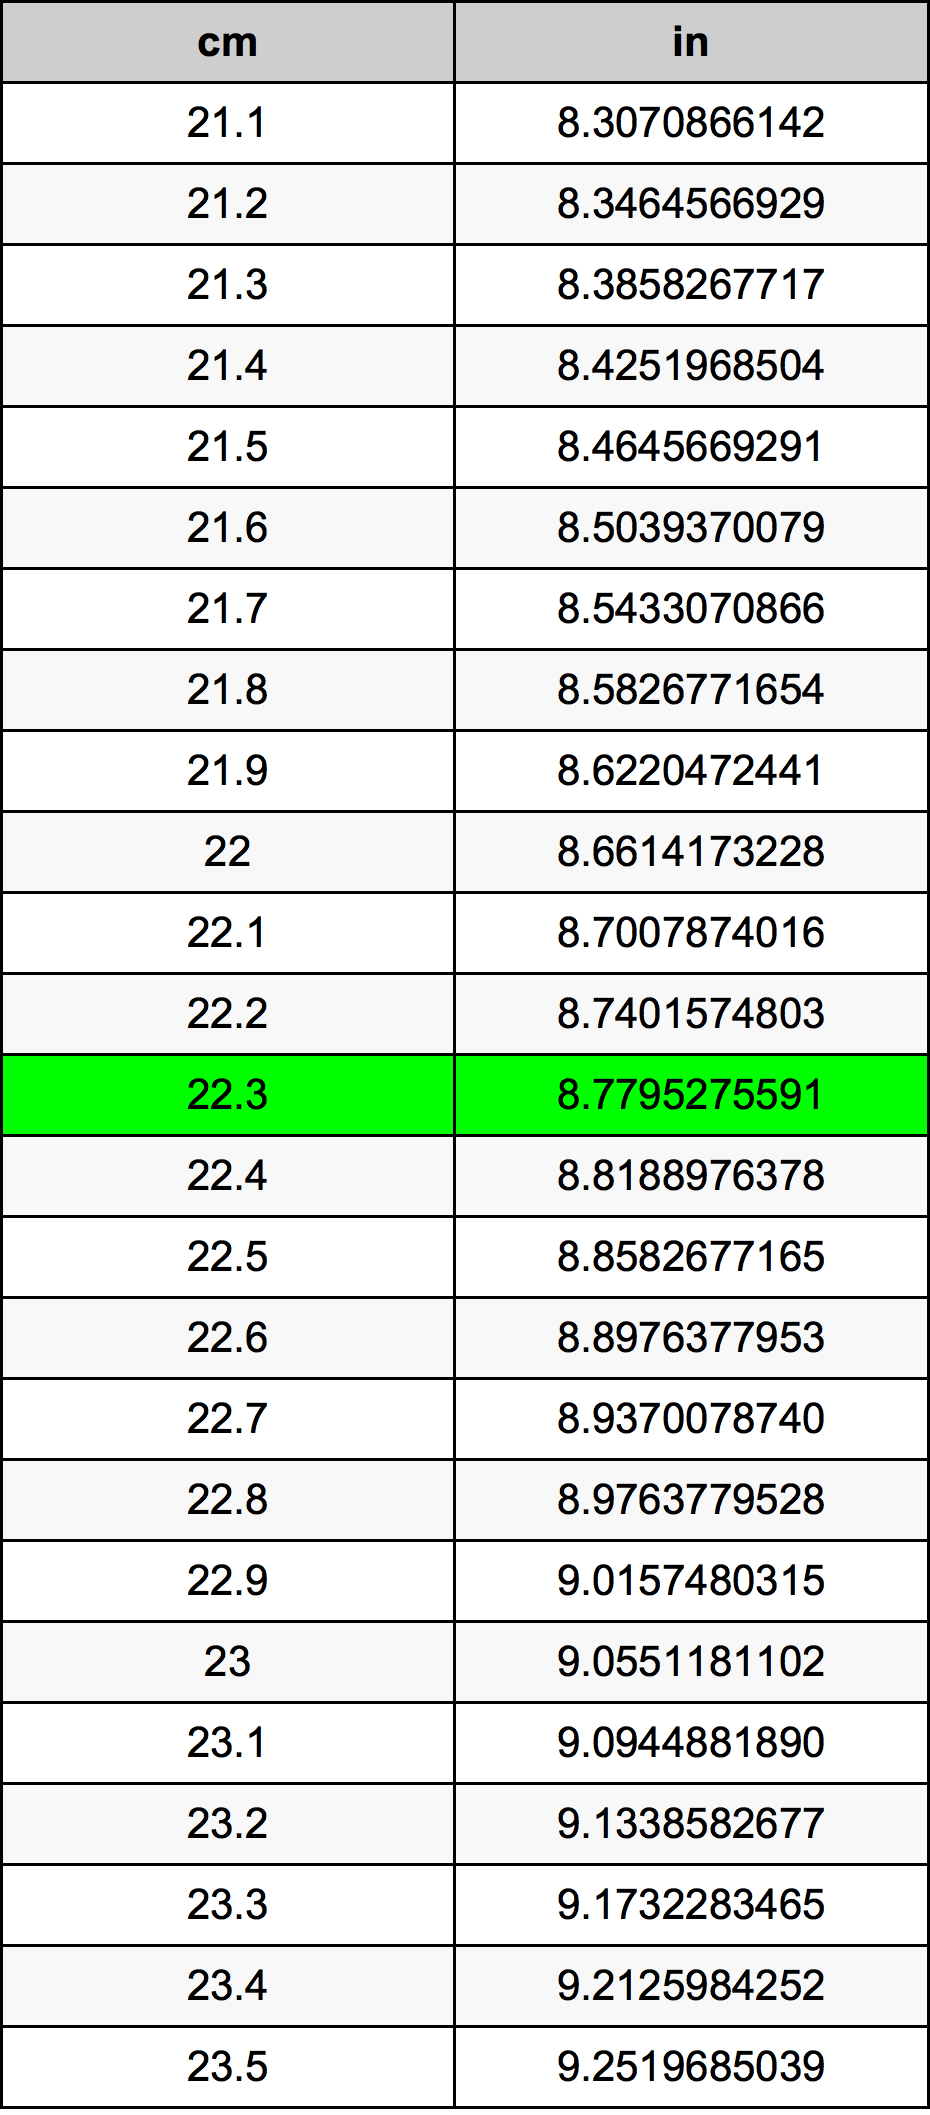 22.3 Centiméter átszámítási táblázat